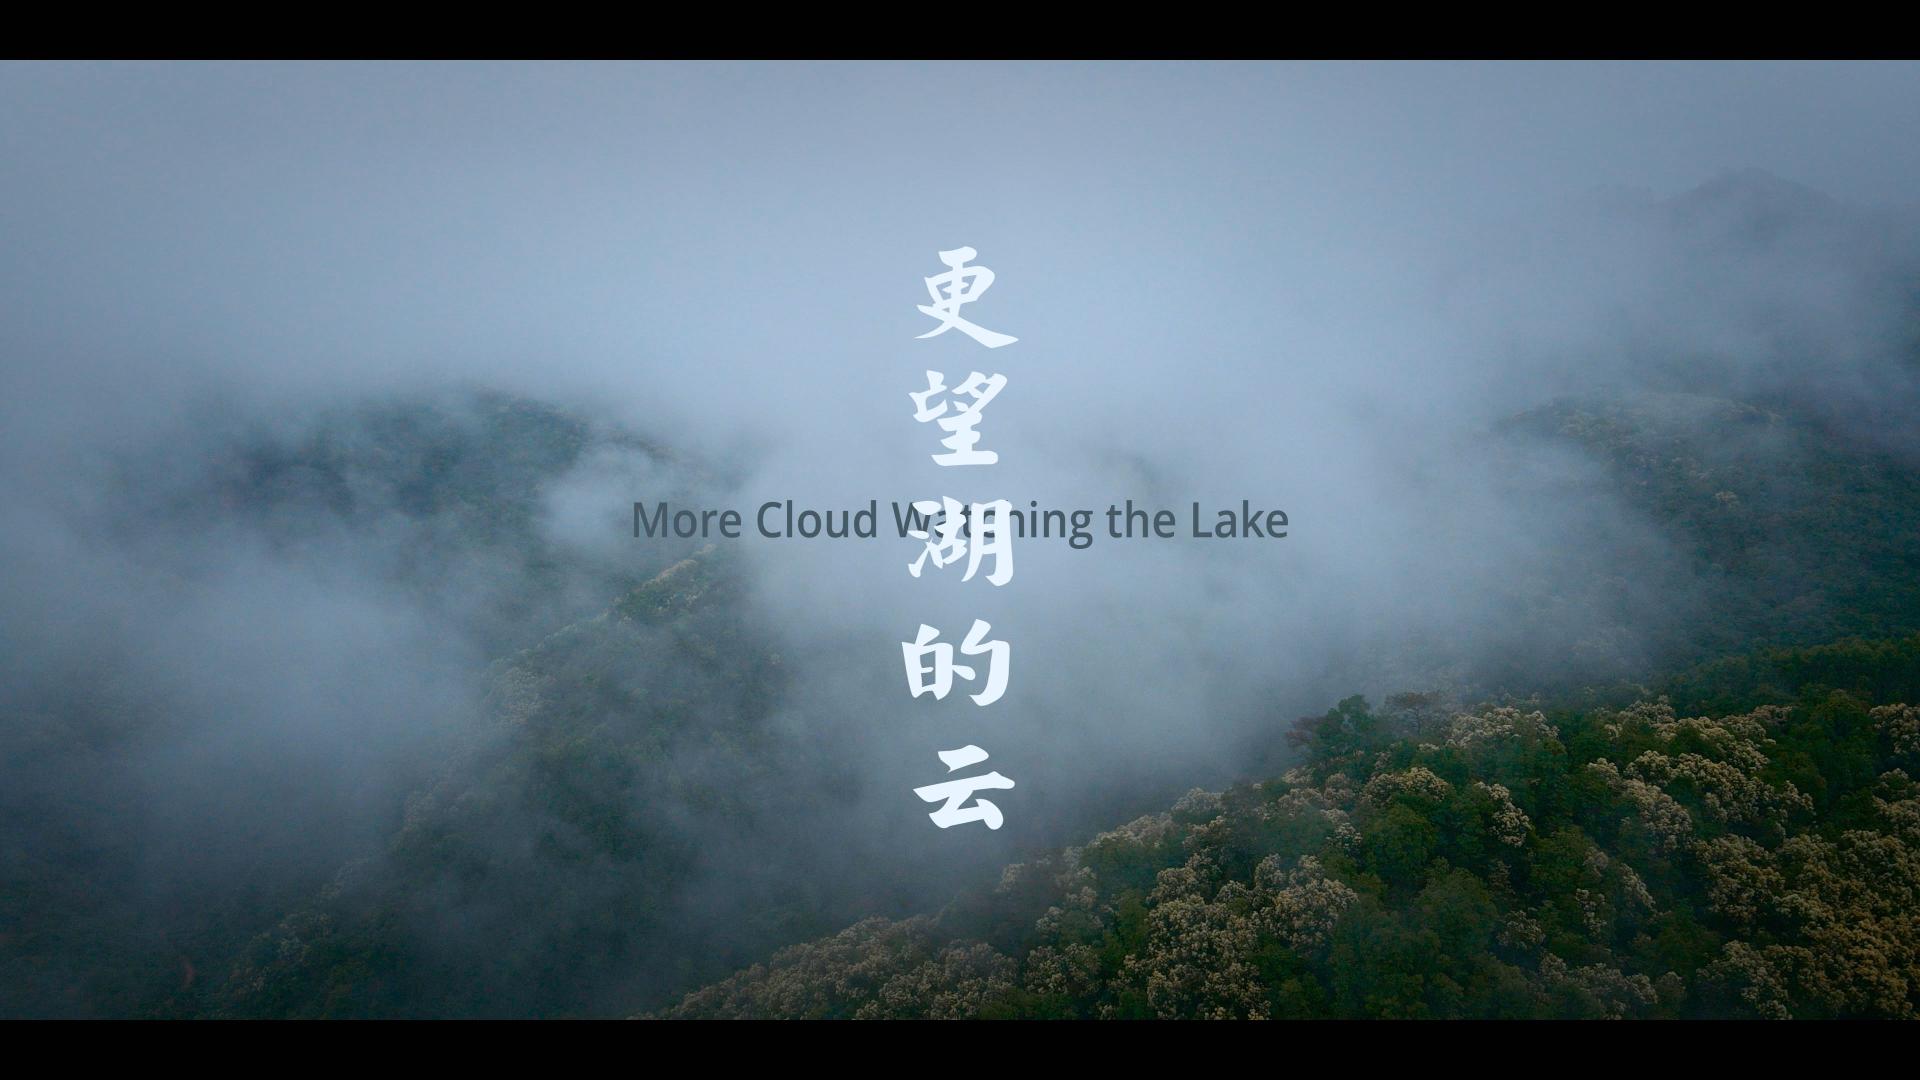 文艺旅拍《更望湖的云》--索尼a7s3/ai r2拍摄